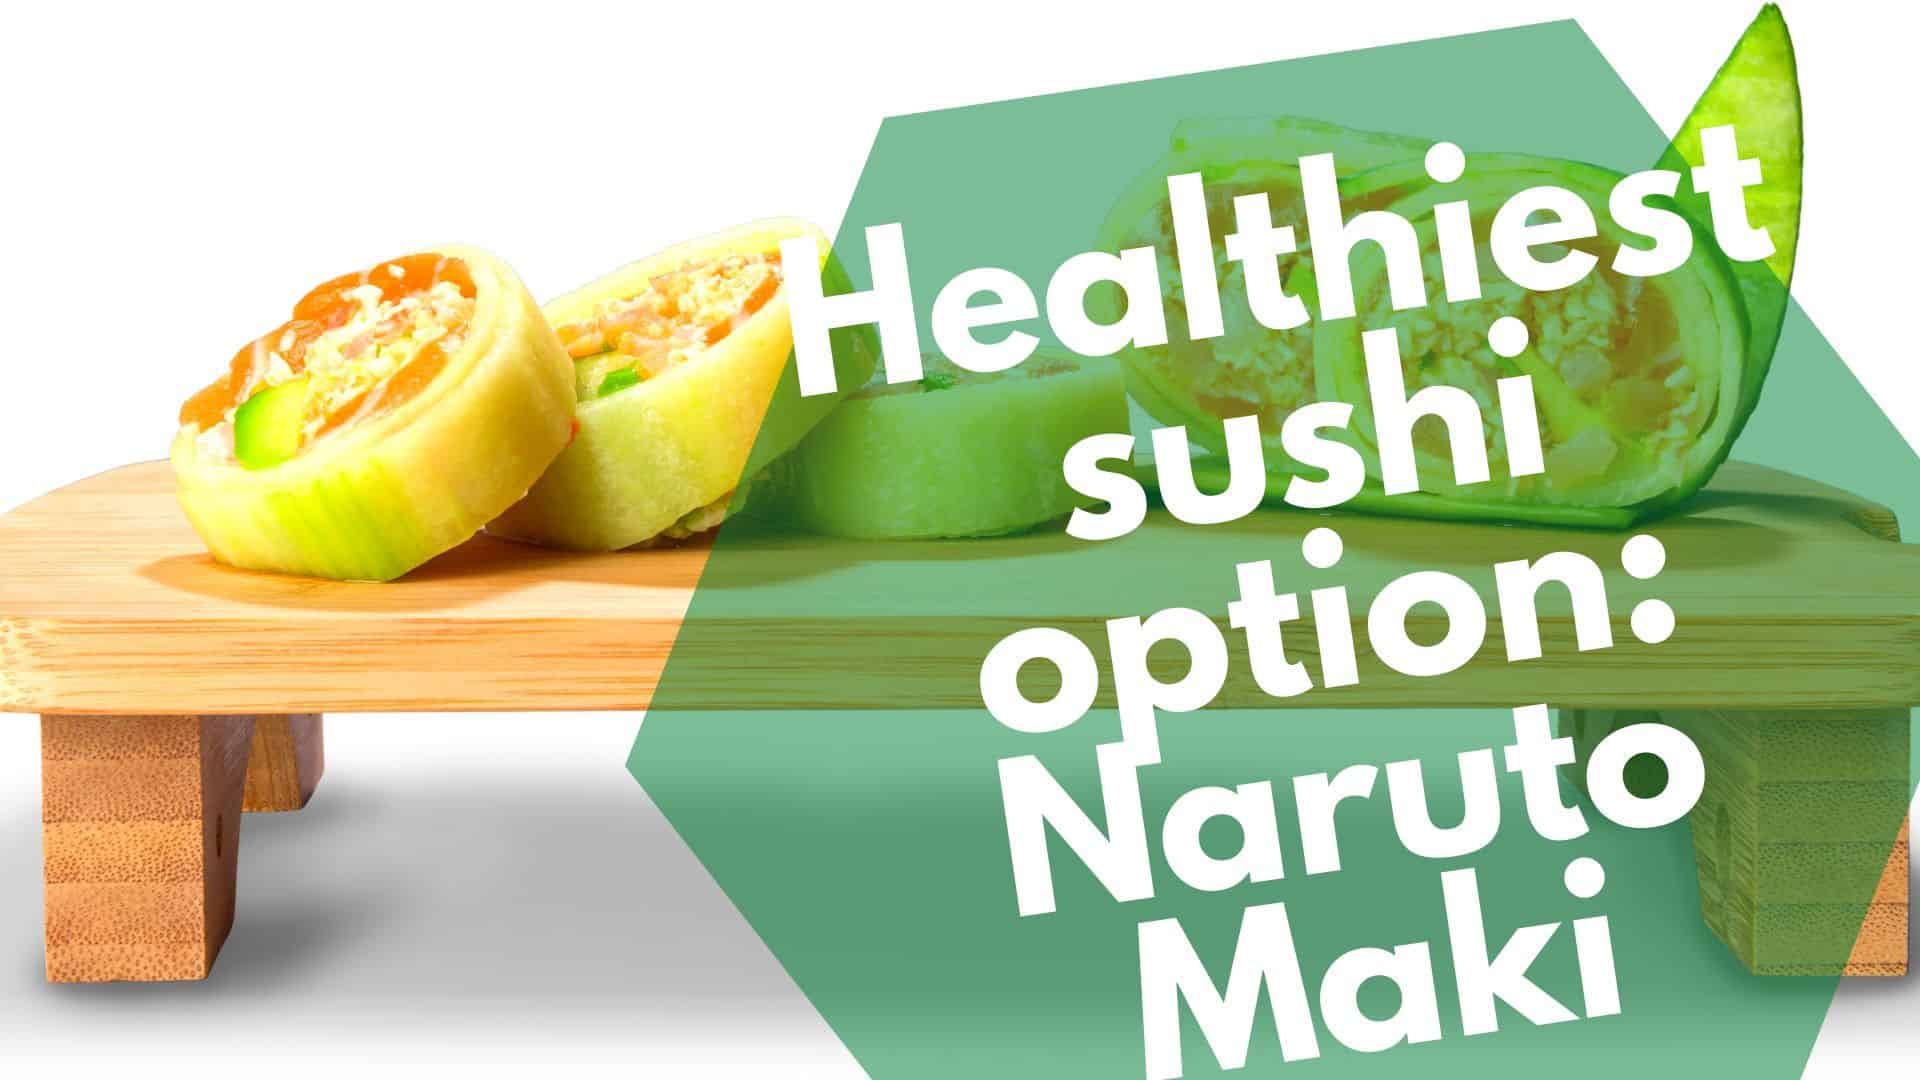 Option de sushi la plus saine: Naruto Maki